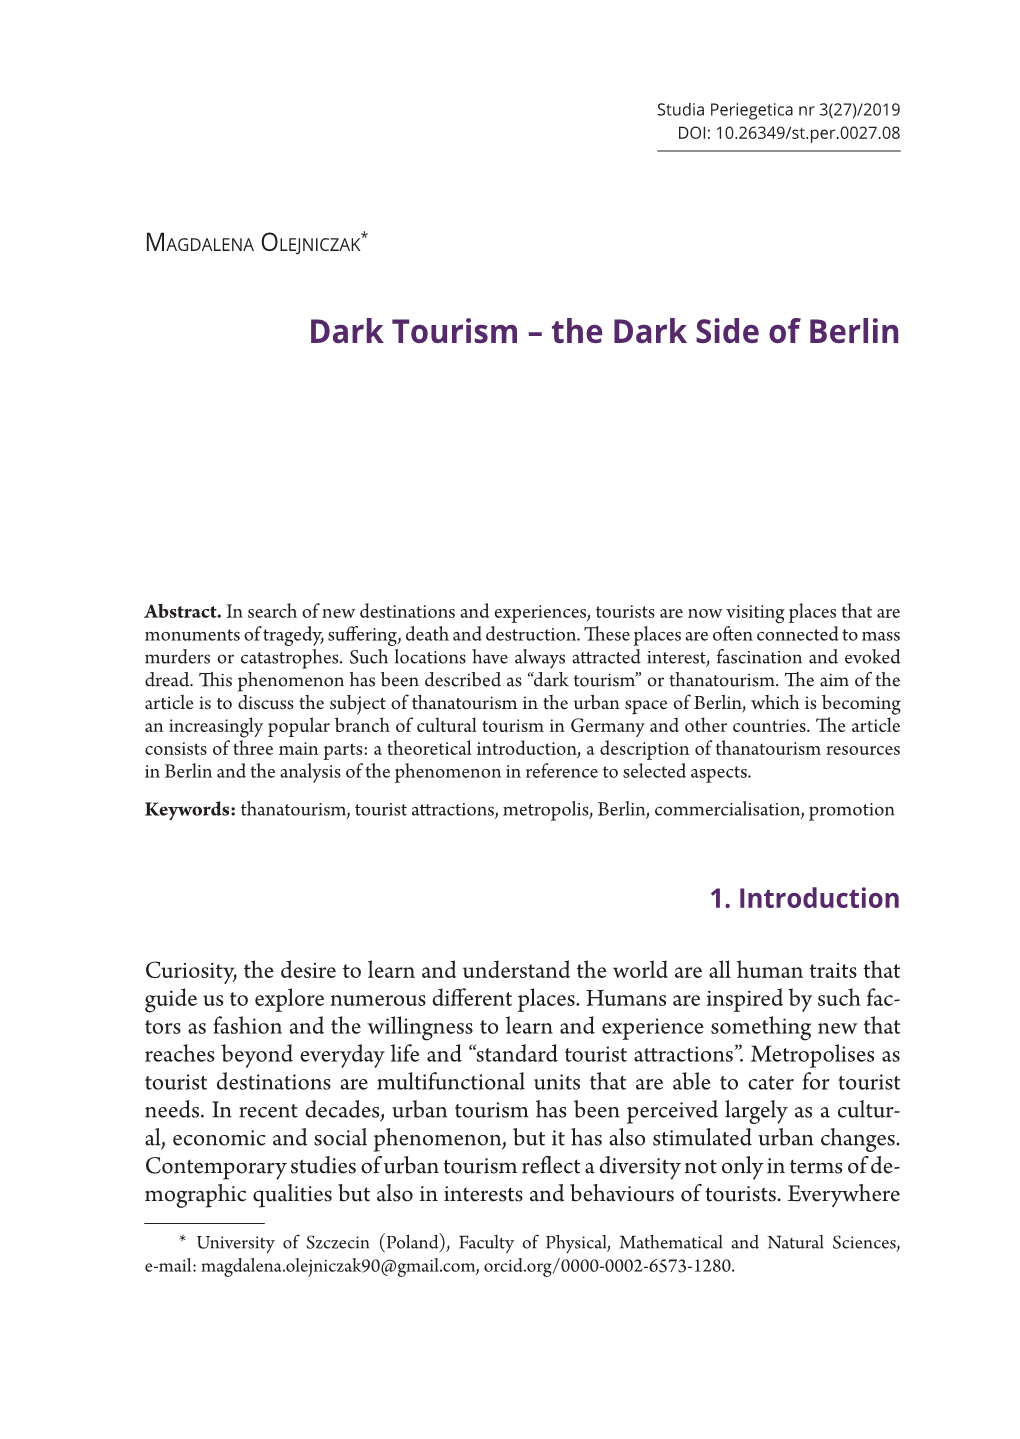 Dark Tourism – the Dark Side of Berlin